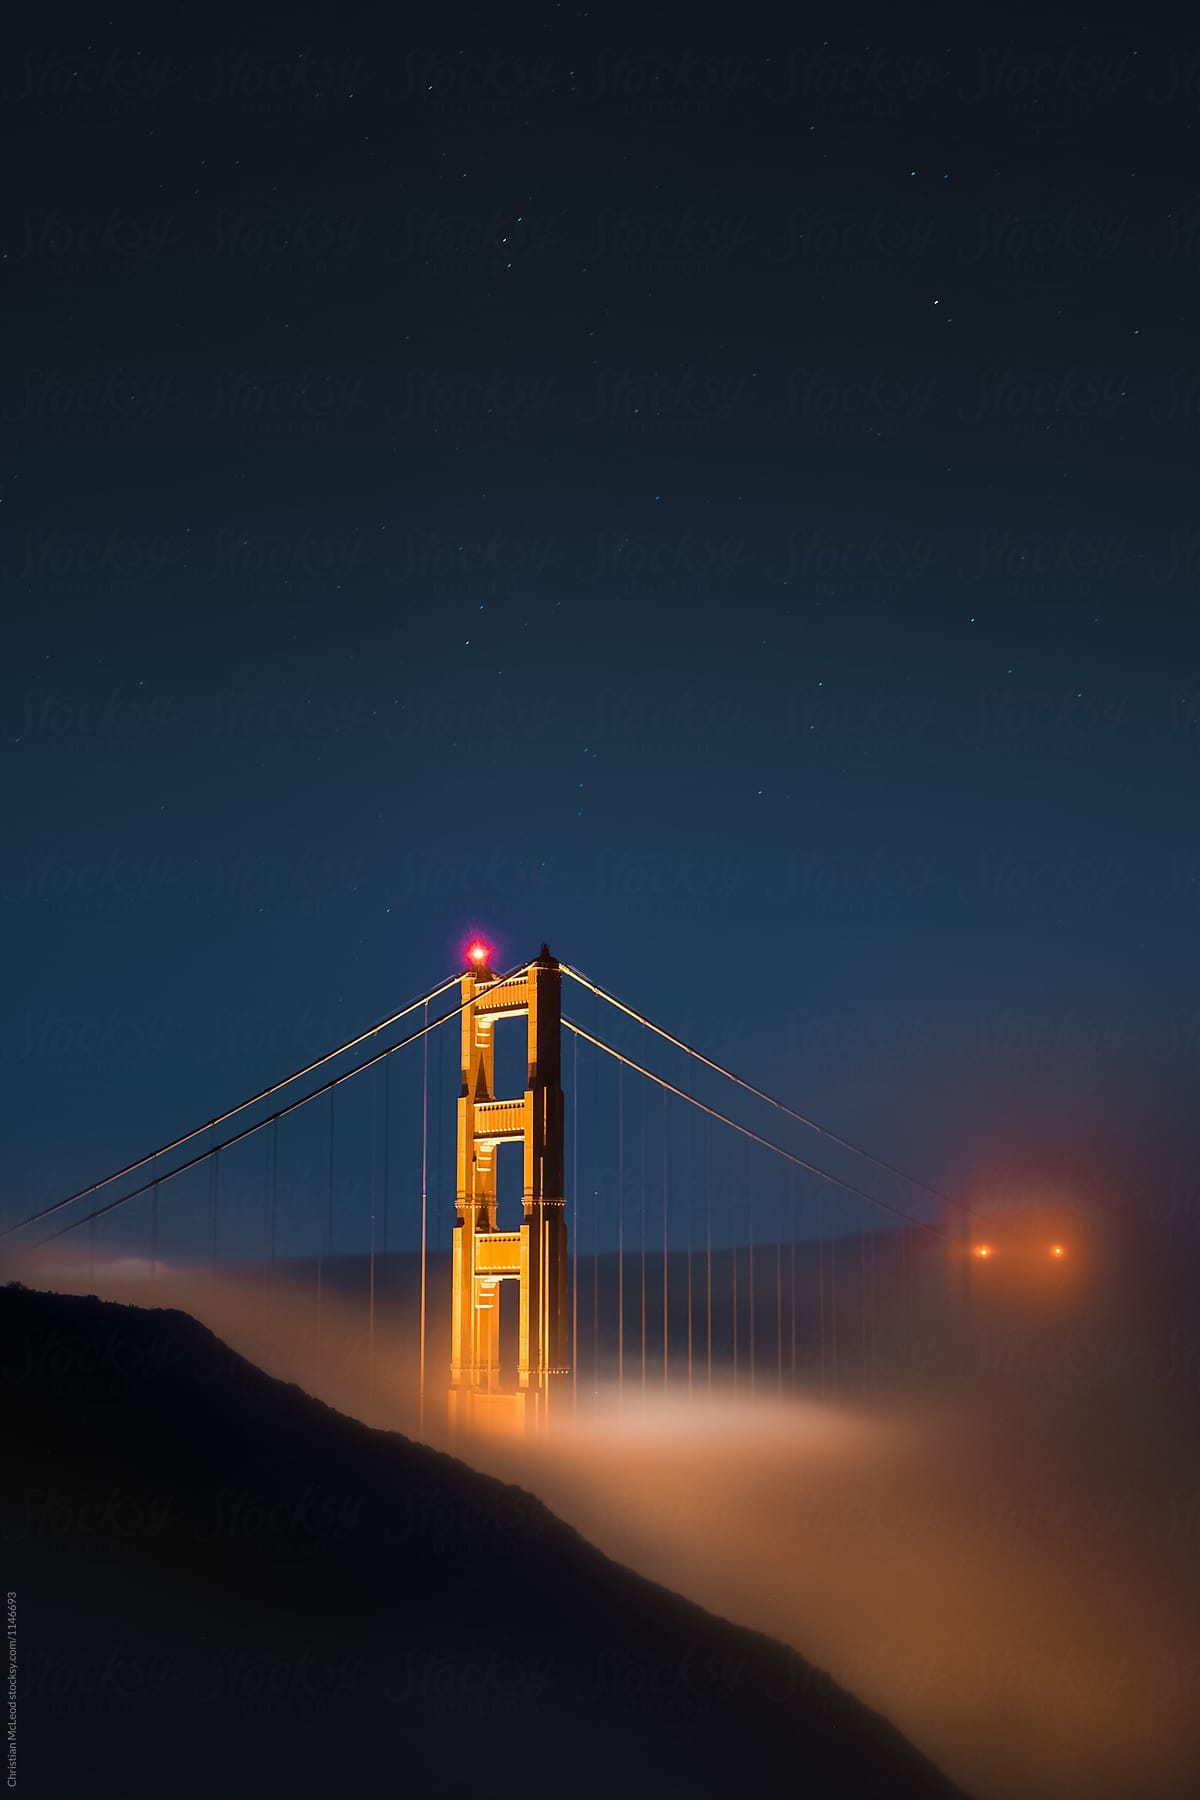 Night fog rolls under the Golden gate Bridge